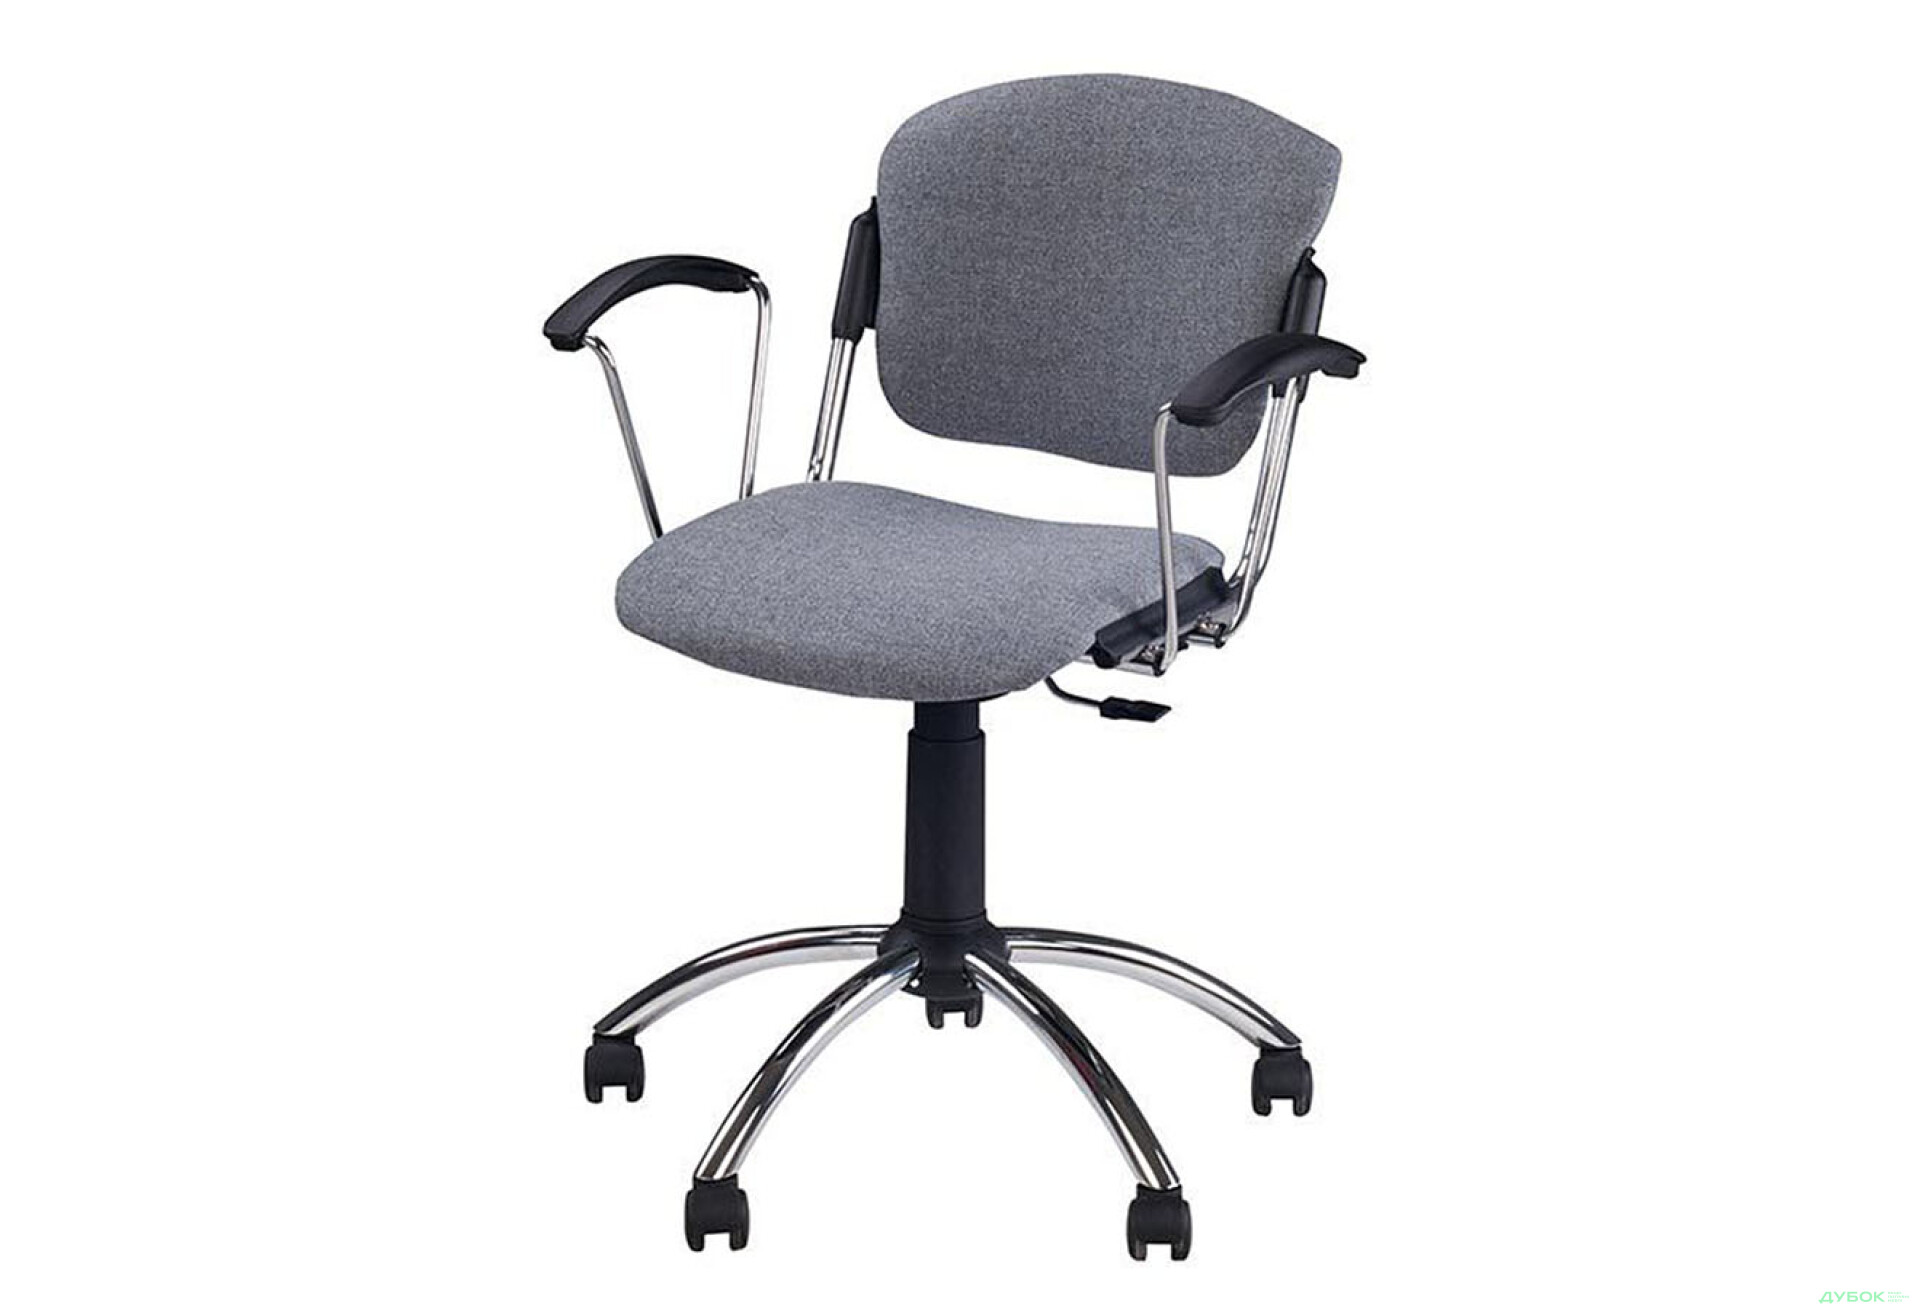 Фото 1 - Компьютерное кресло Новый Стиль Era GTP chrome CHR10 62x62x94 см